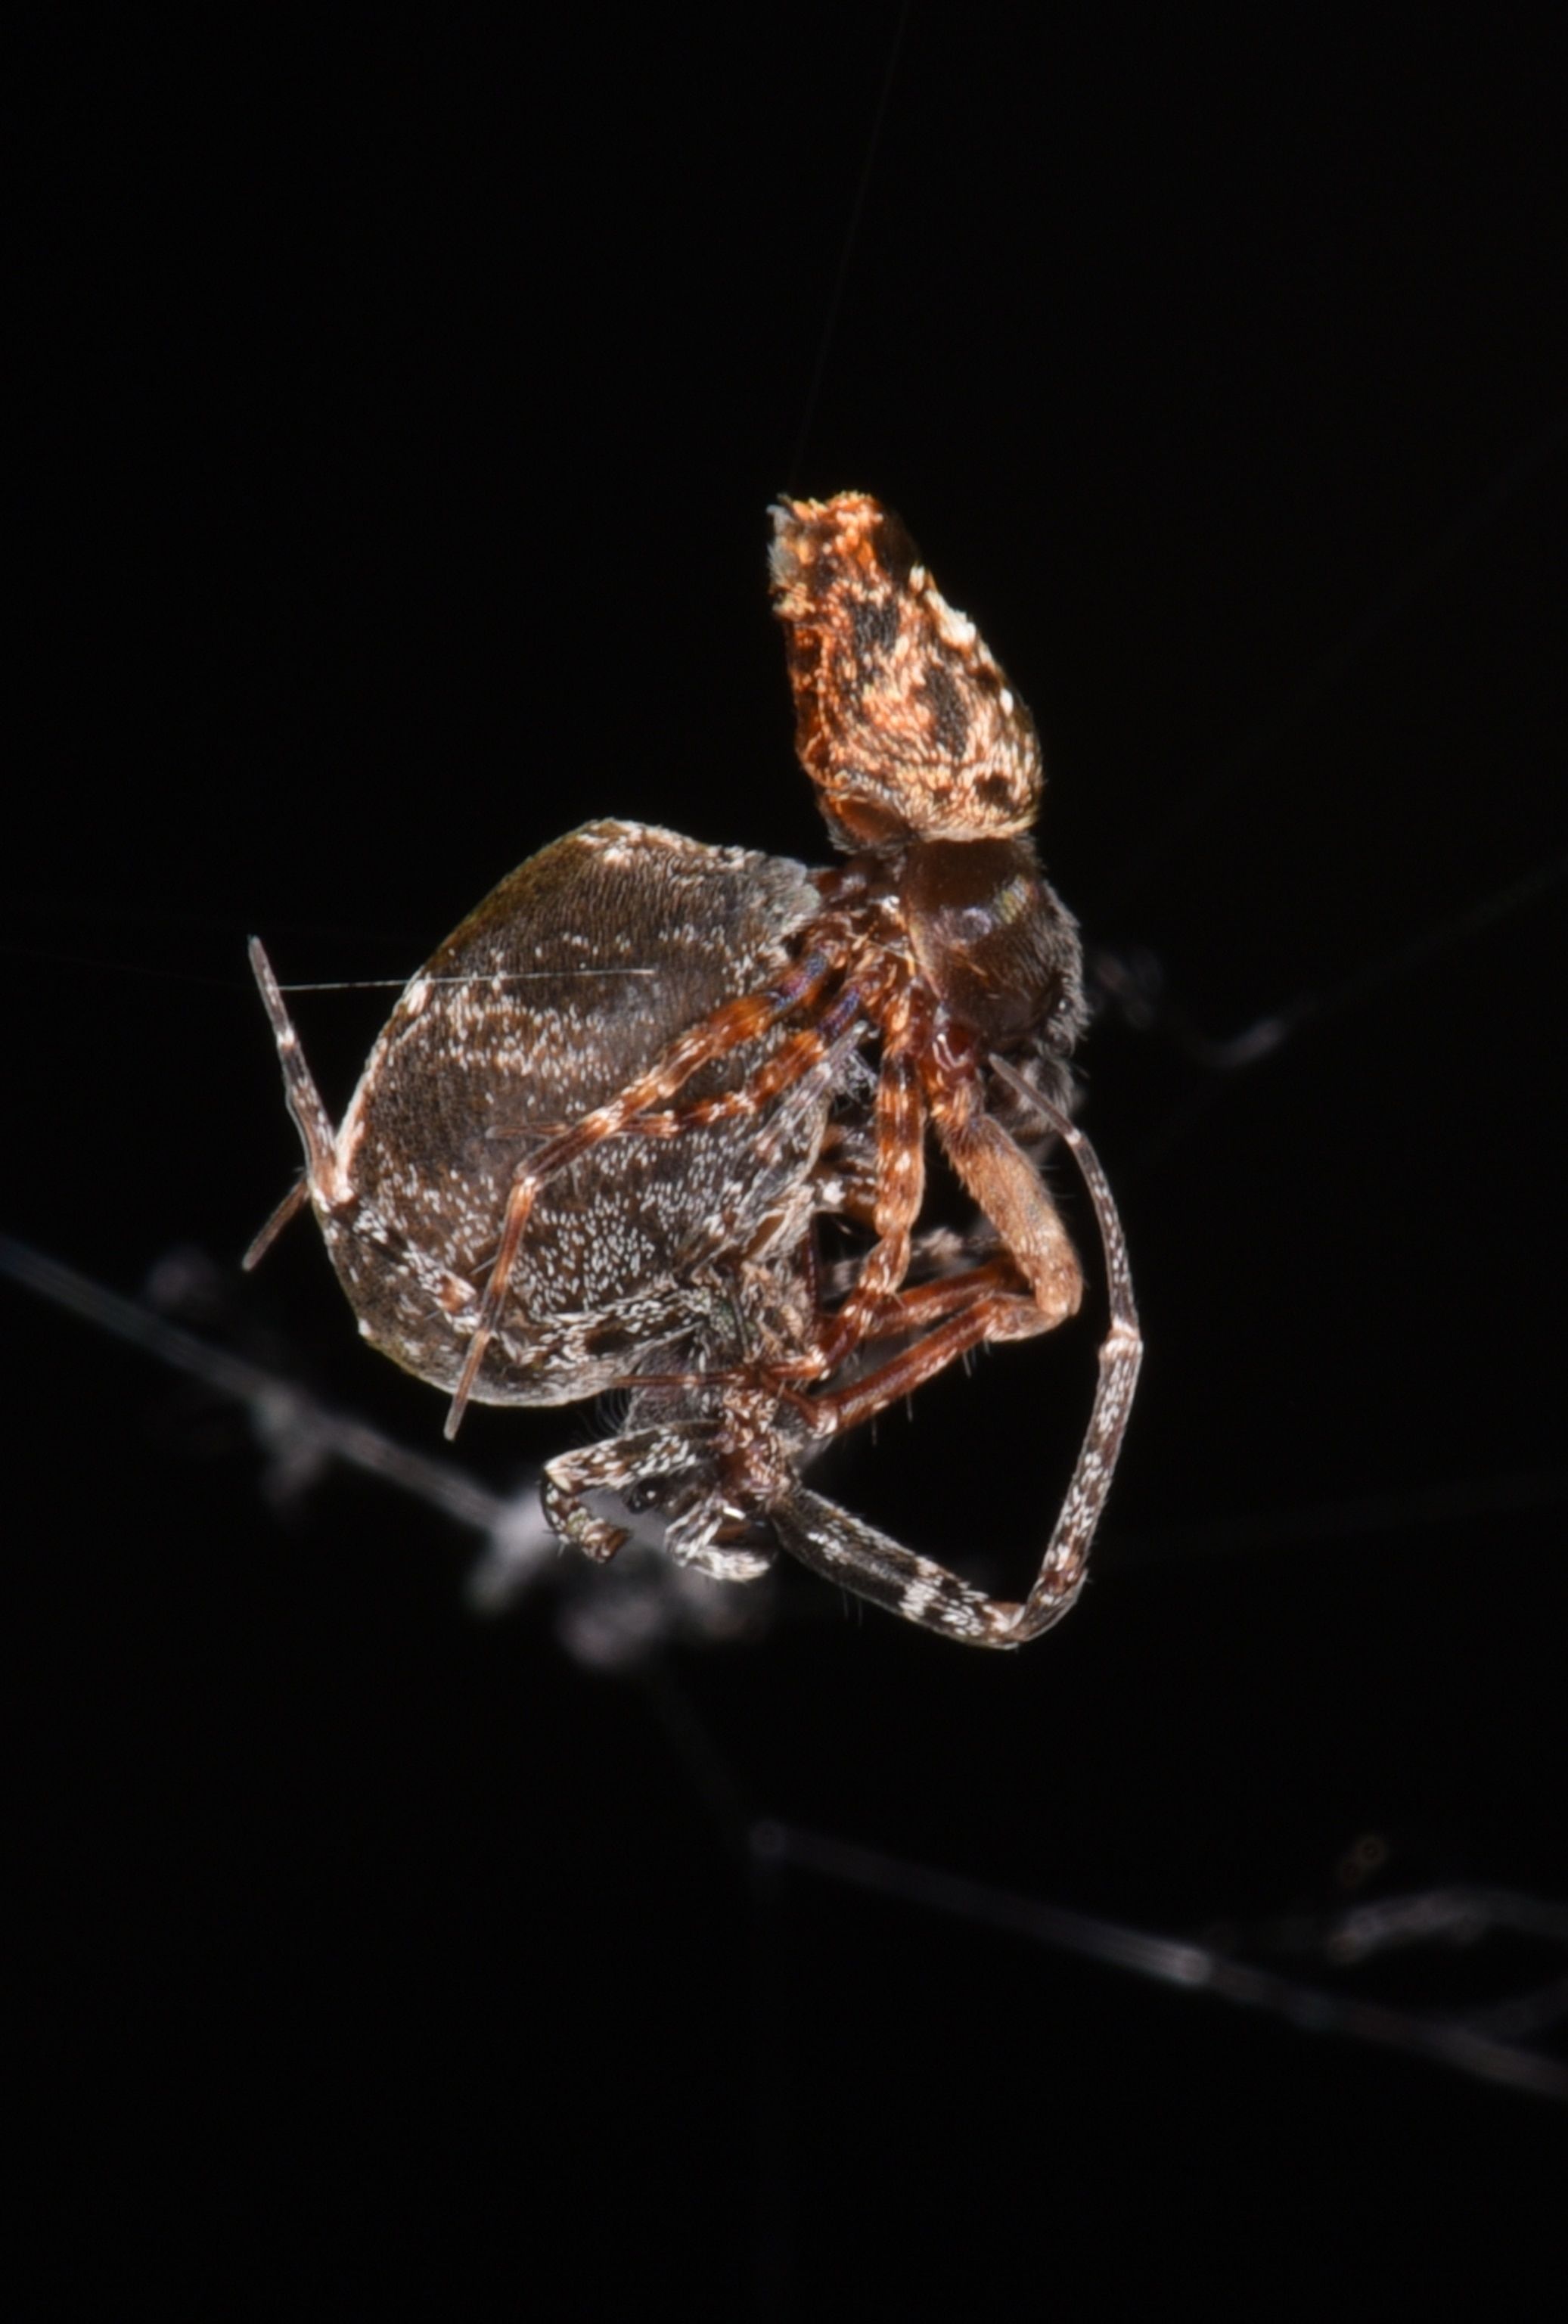 Deze spinnen katapulteren zichzelf om na de paring niet te worden opgegeten